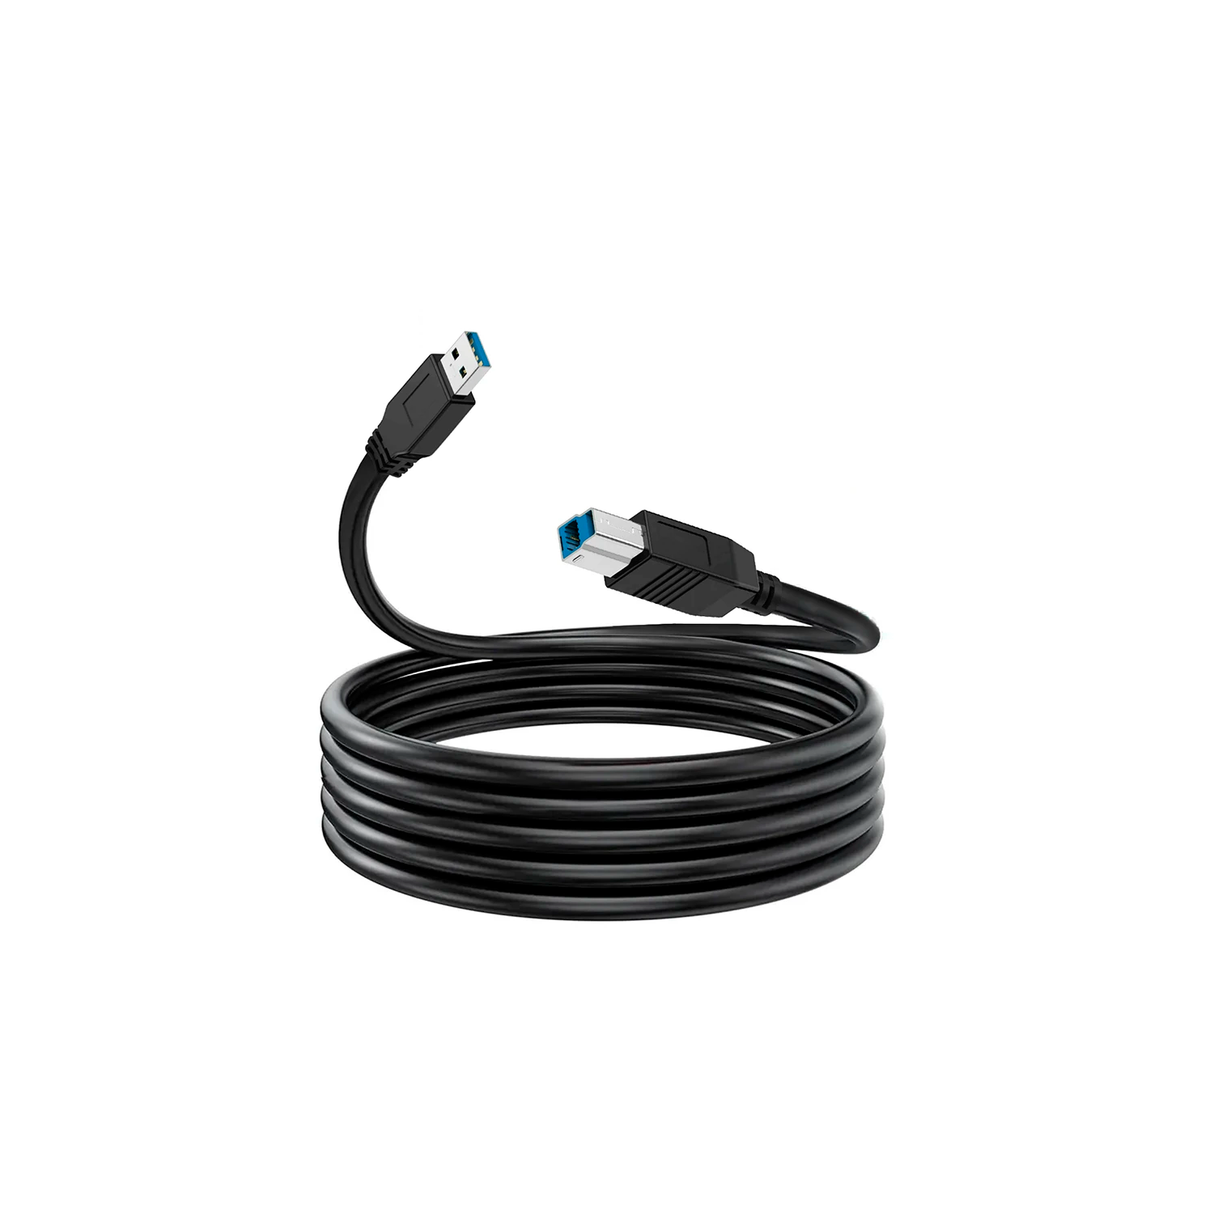 Cable para Impresora USB 2.0 de 1.5m